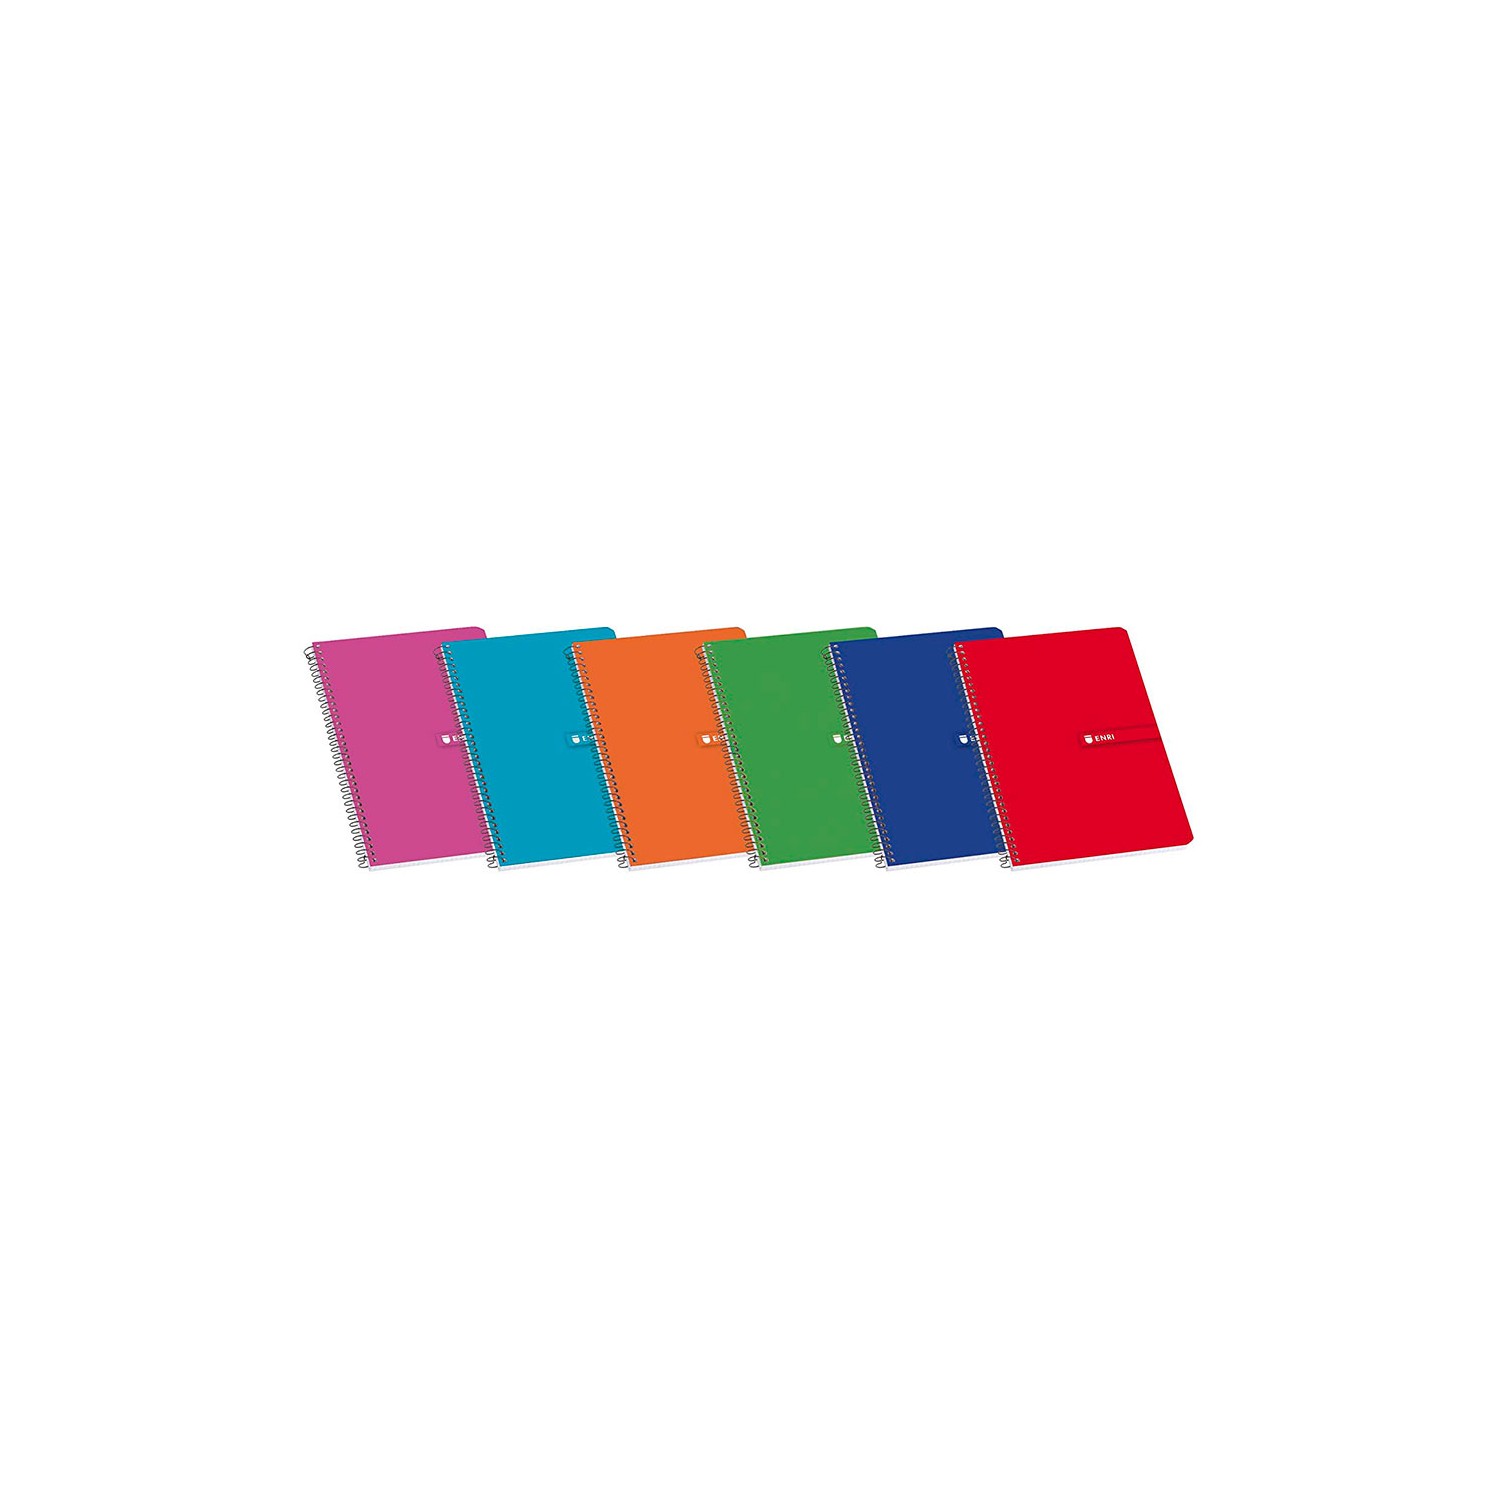 Cuaderno de tapa blanda enri espiral din a5 cuadriculado colores surtidos